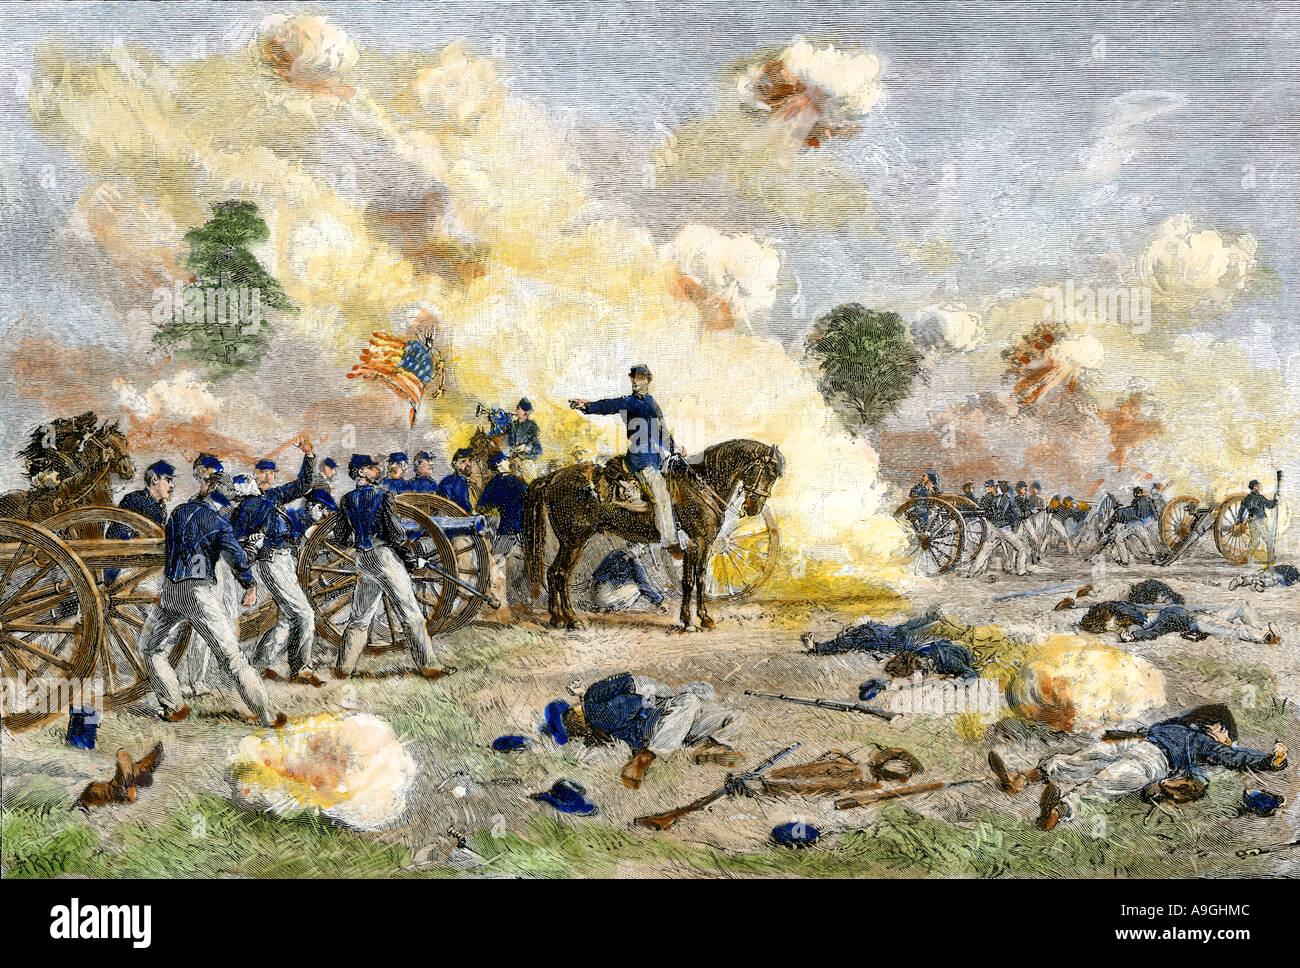 Cuarto de artillería estadounidense bajo el teniente Bayard Wilkeson disparando desde una posición expuesta durante la Batalla de Gettysburg en 1863. Xilografía coloreada a mano Foto de stock